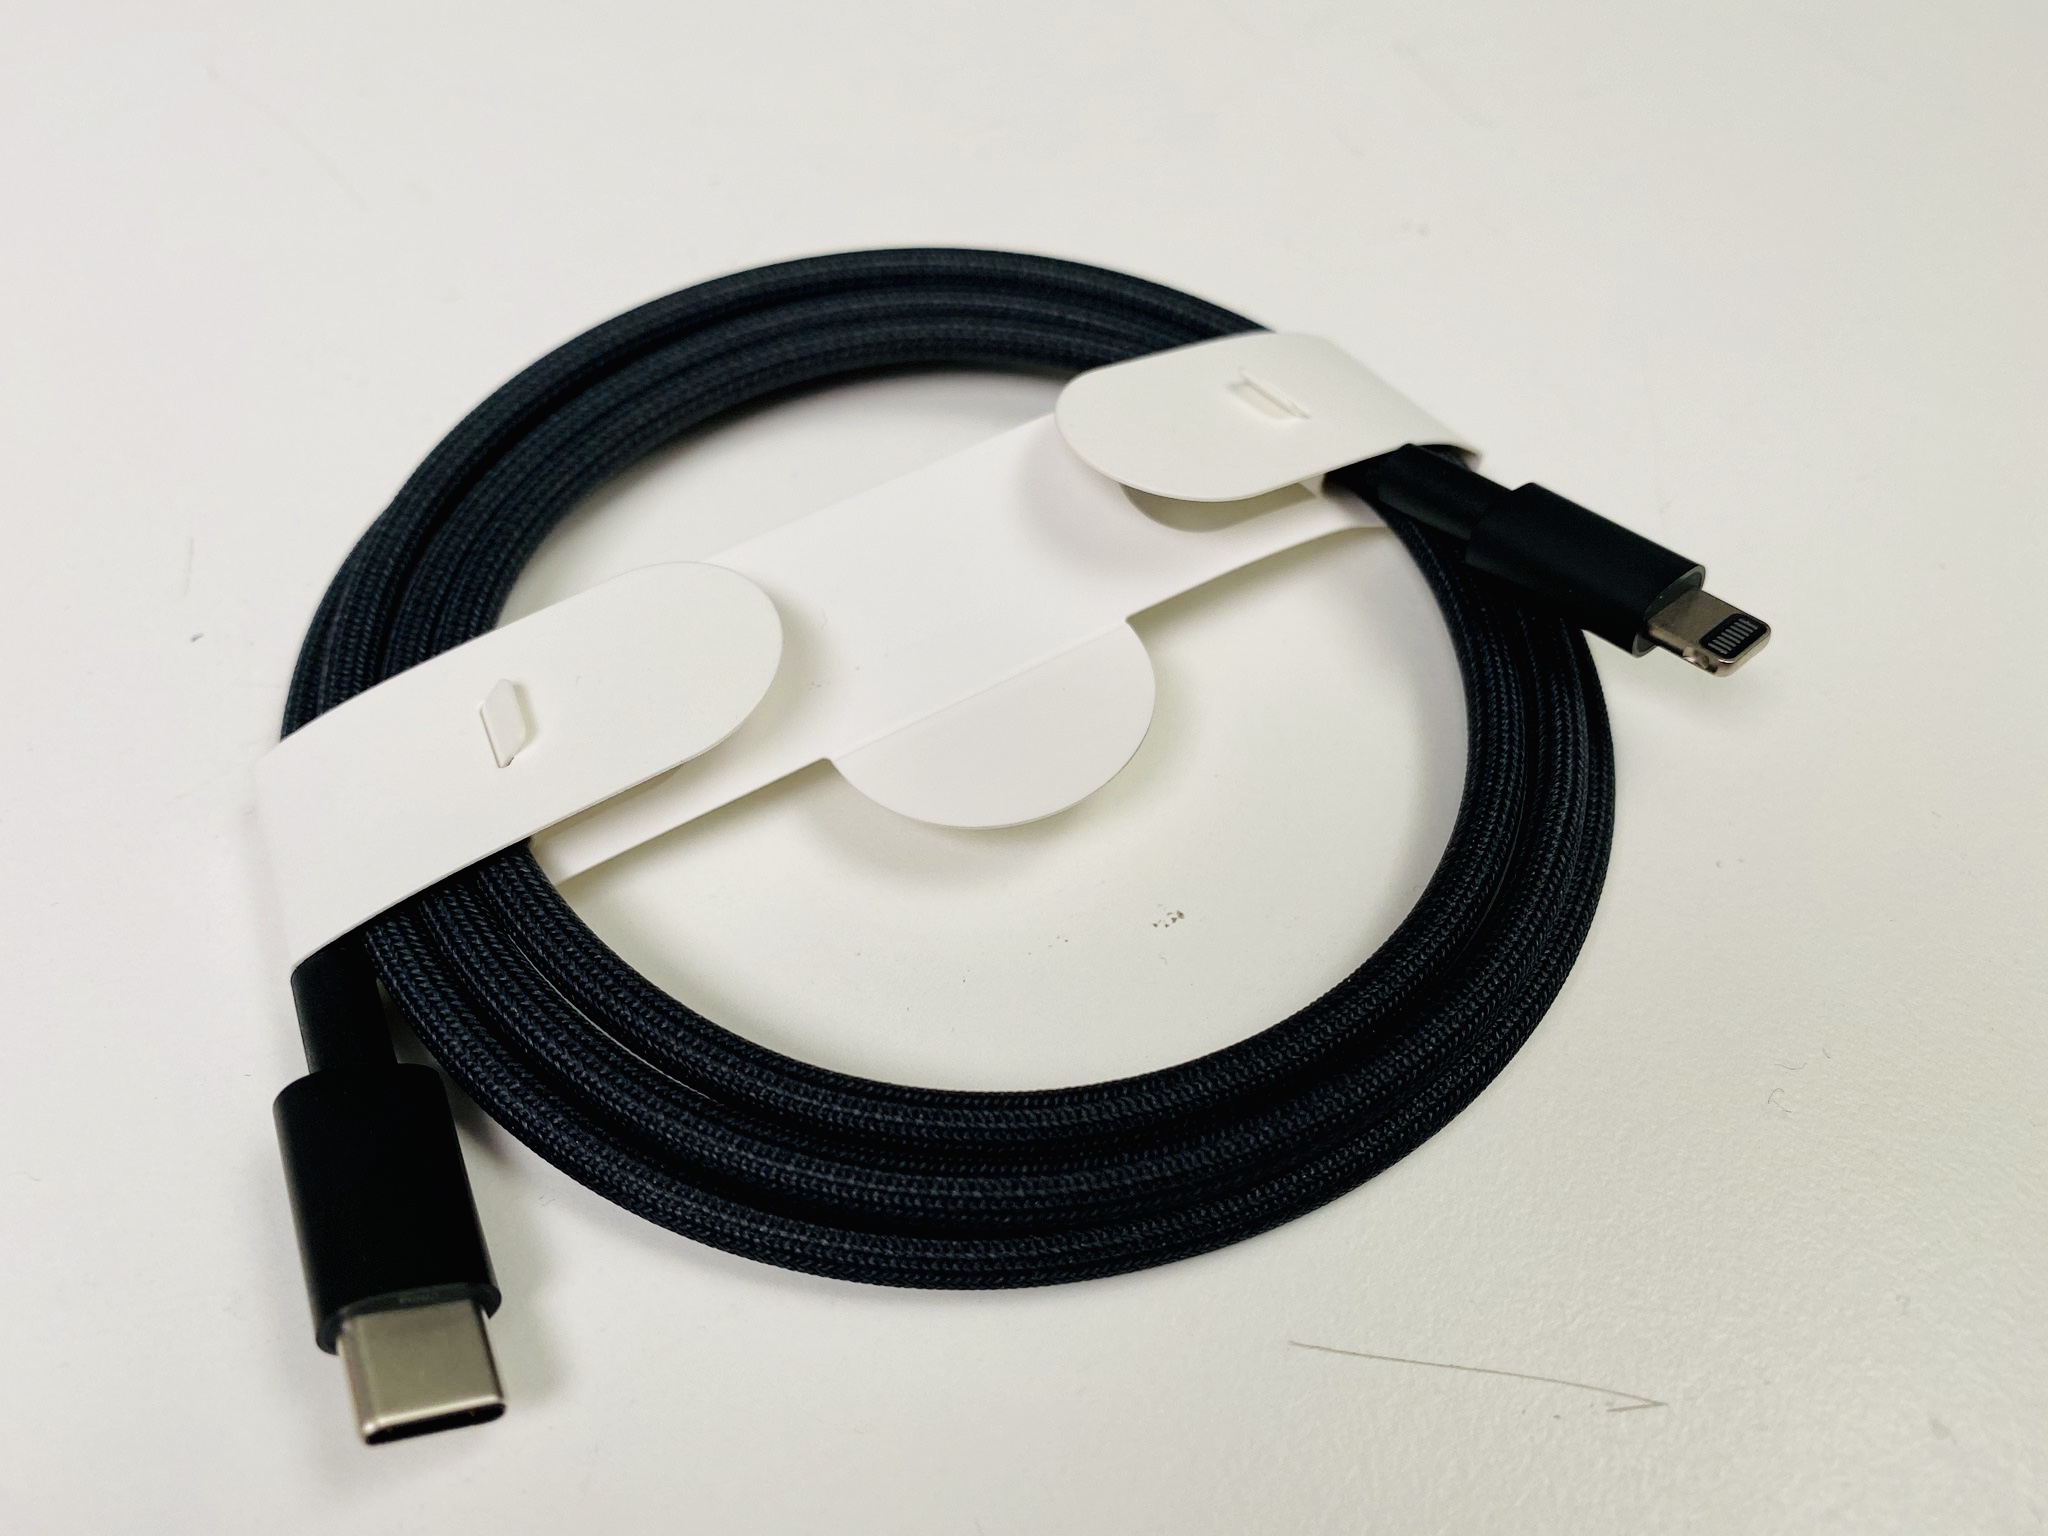 В комплекте с Mac Pro идёт плетёный кабель Lightning. Такой не купить